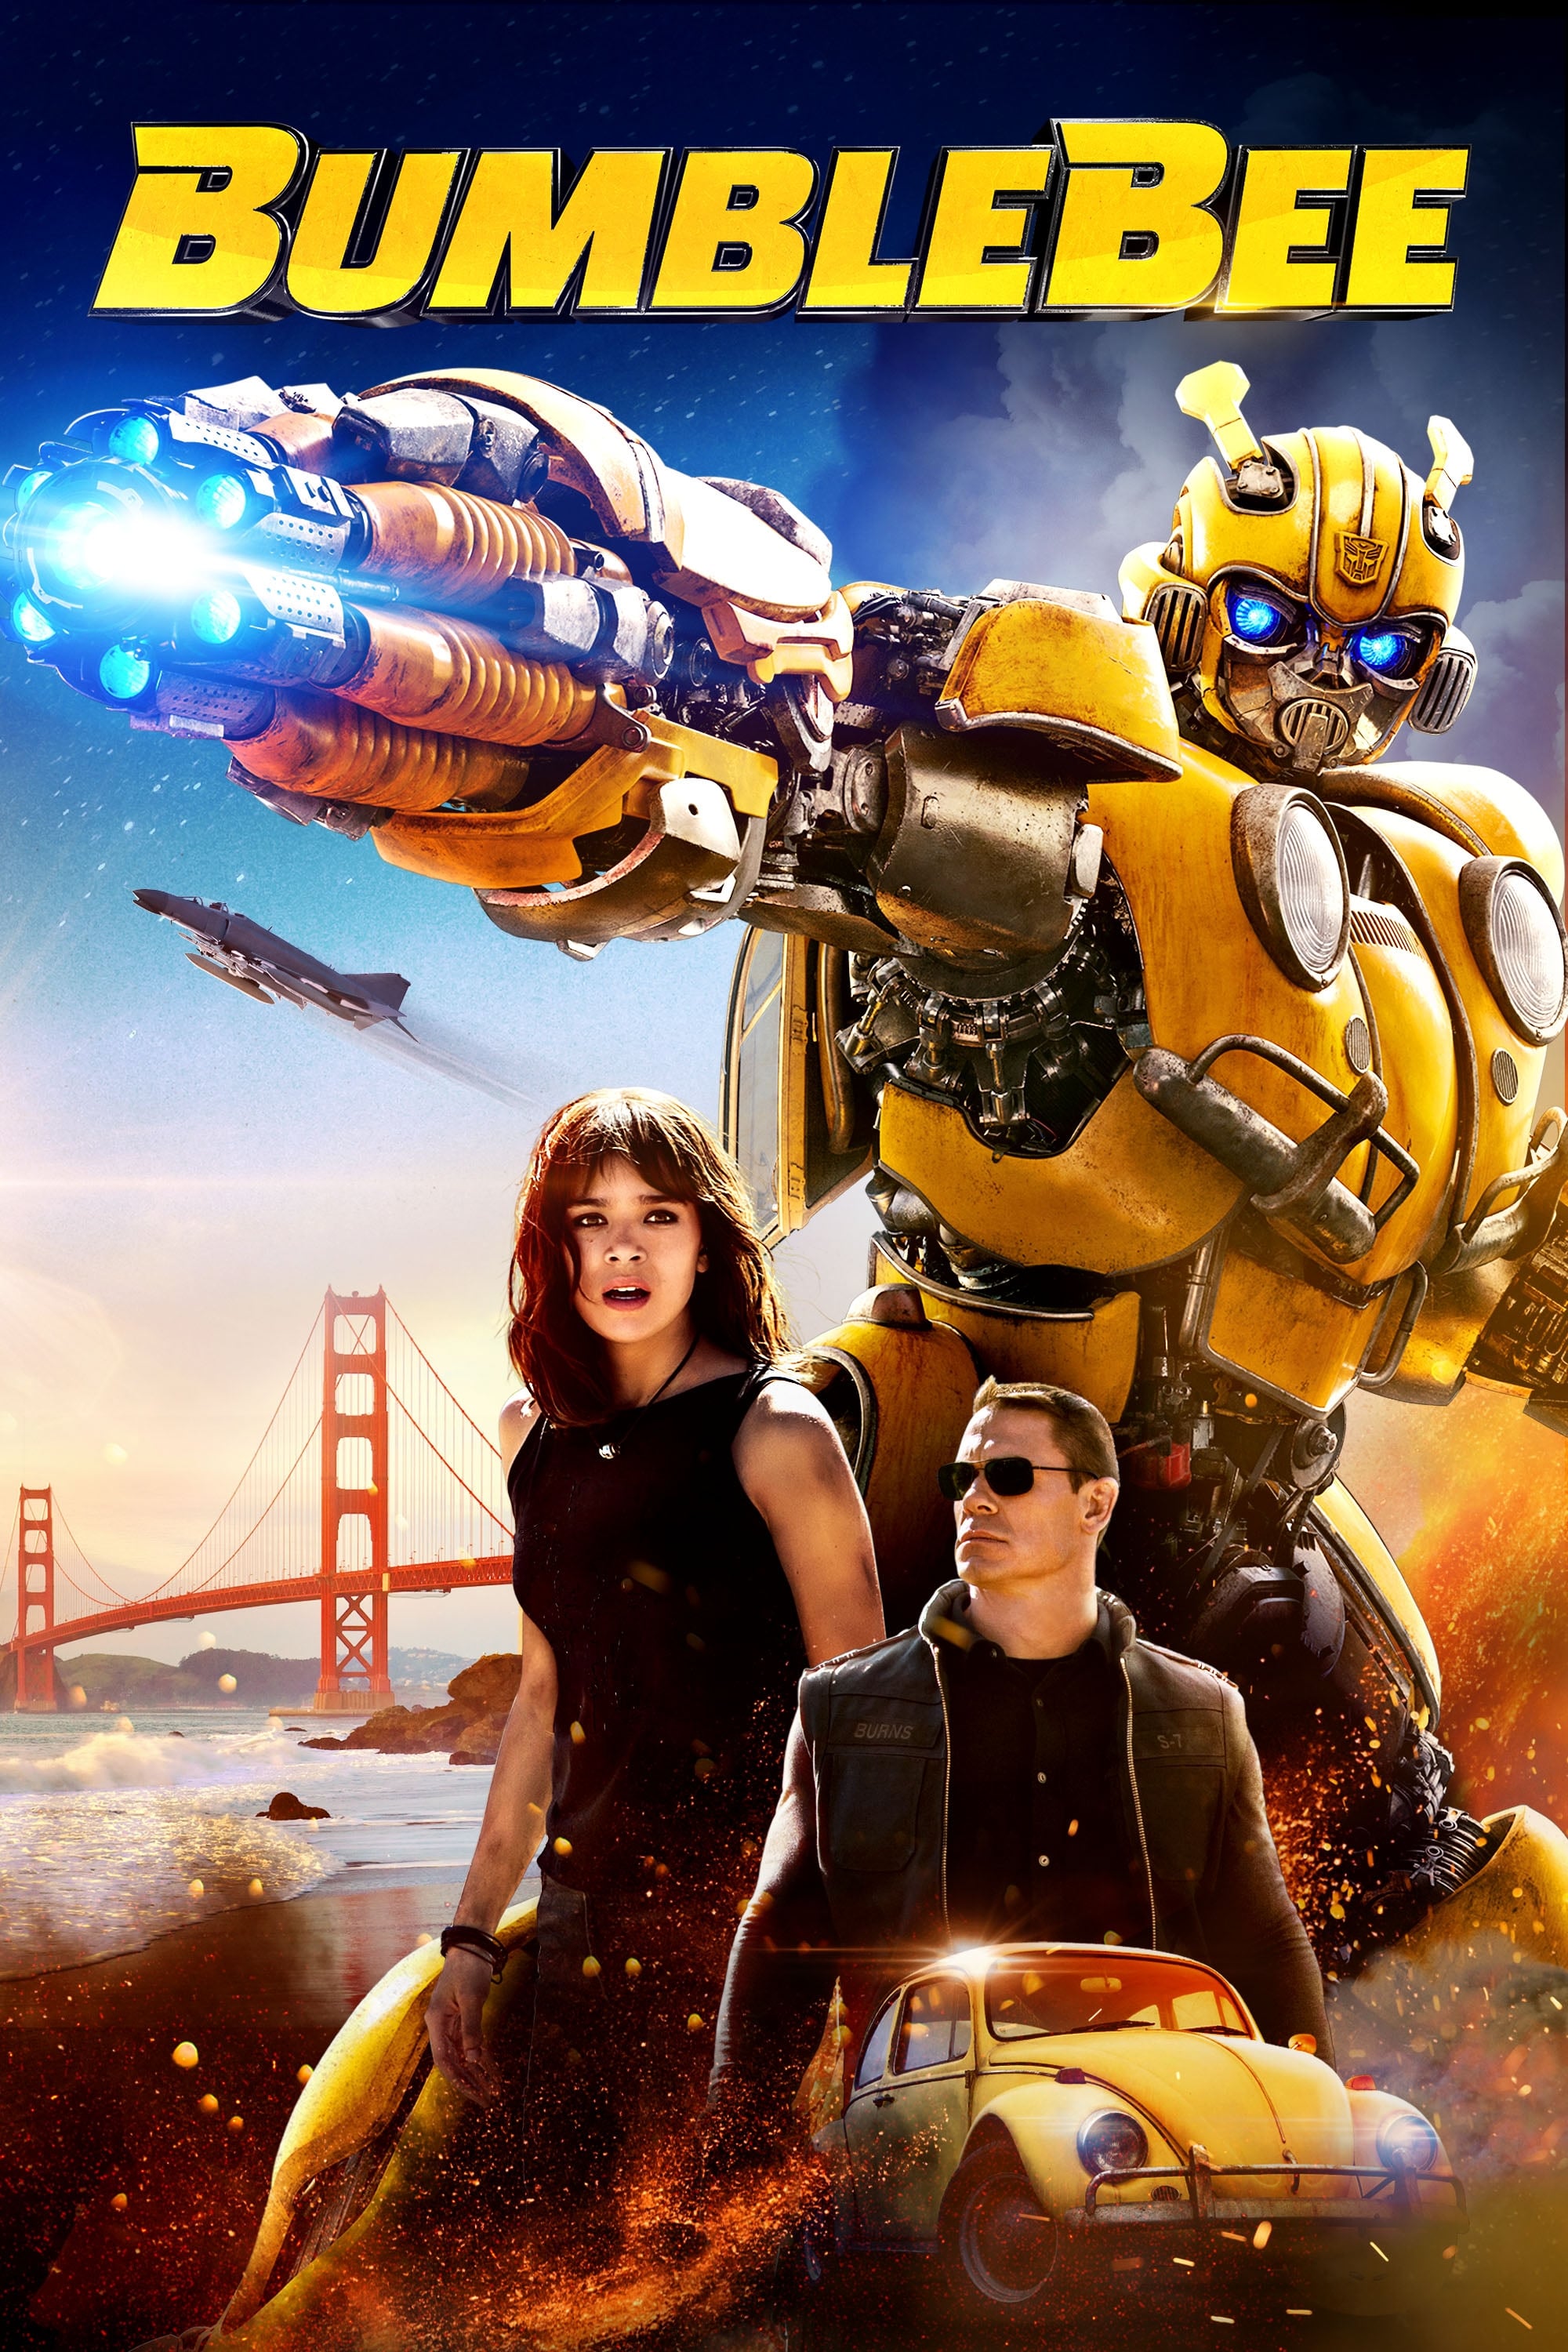 Transformers: O Filme, Dublapédia